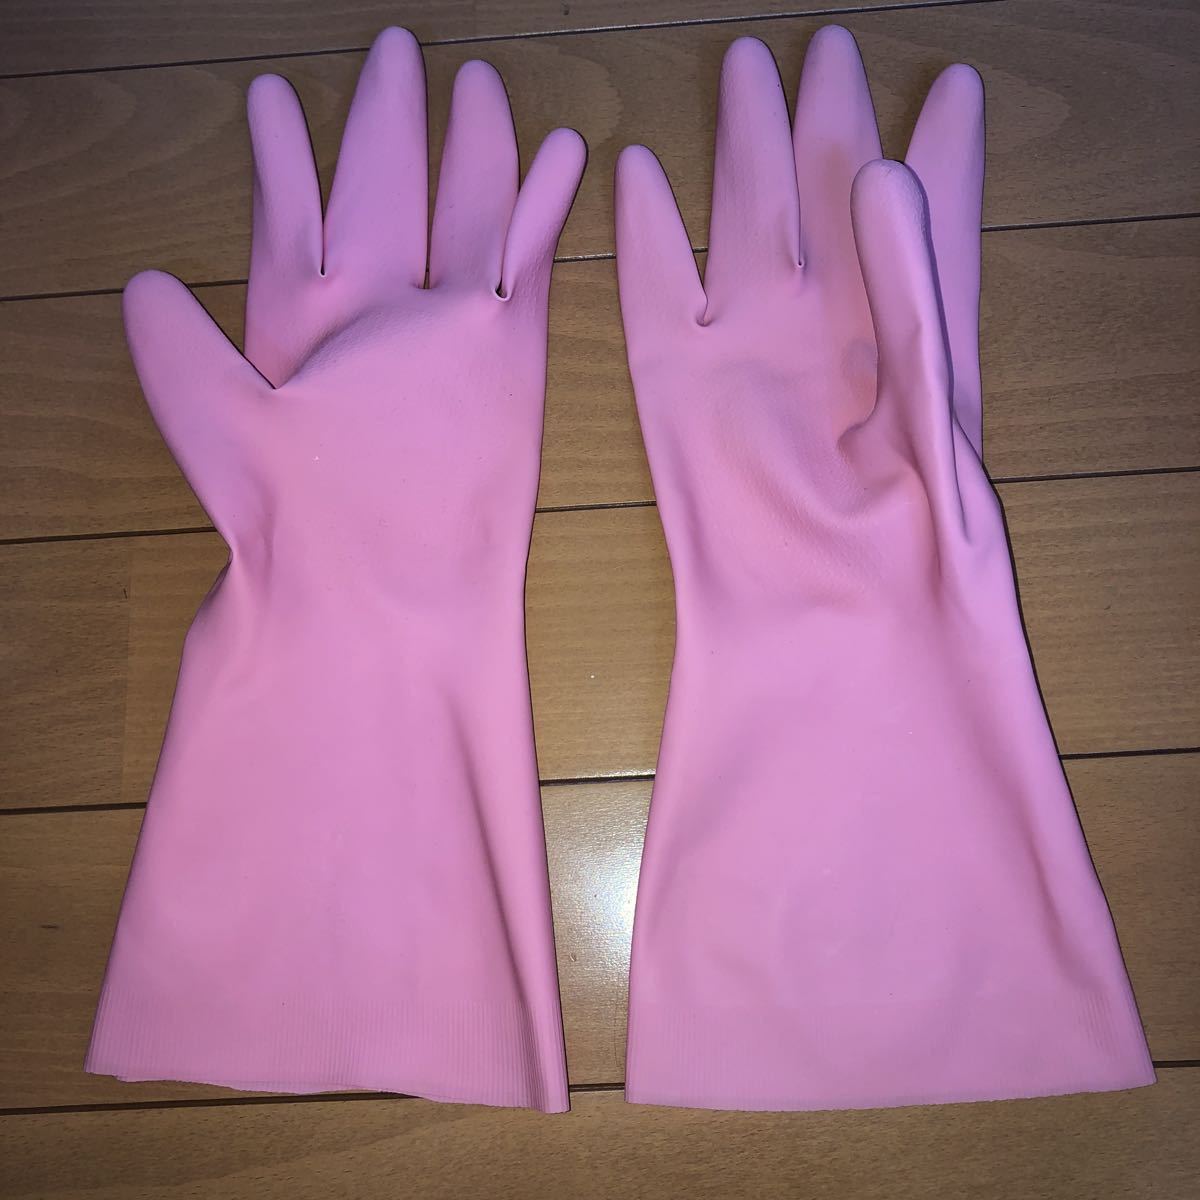 ゴム手袋 ピンクの値段と価格推移は？｜44件の売買情報を集計したゴム手袋 ピンクの価格や価値の推移データを公開